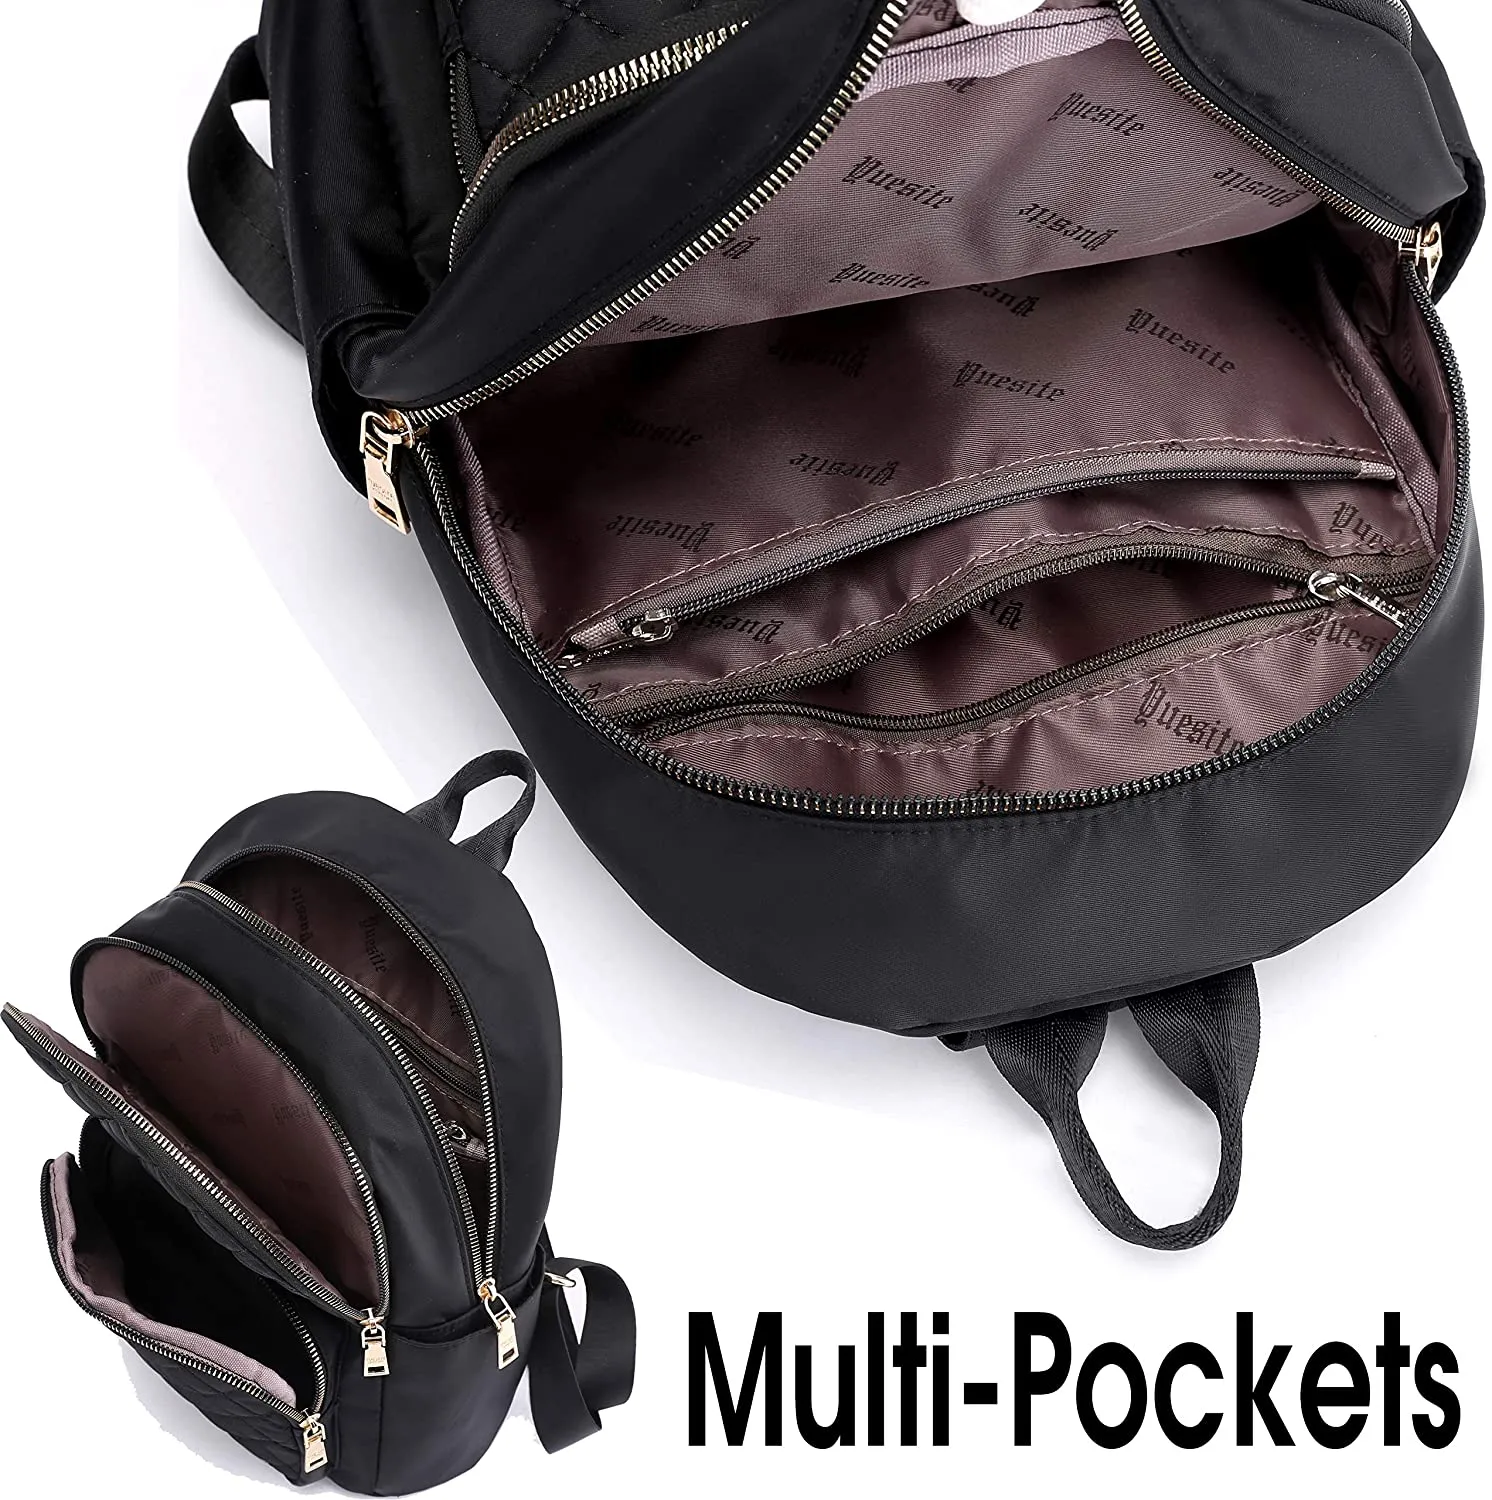 Mochila clásica con bolsillo frontal transparente, mochila impermeable con  cremallera, mini bolsa de viaje para exteriores